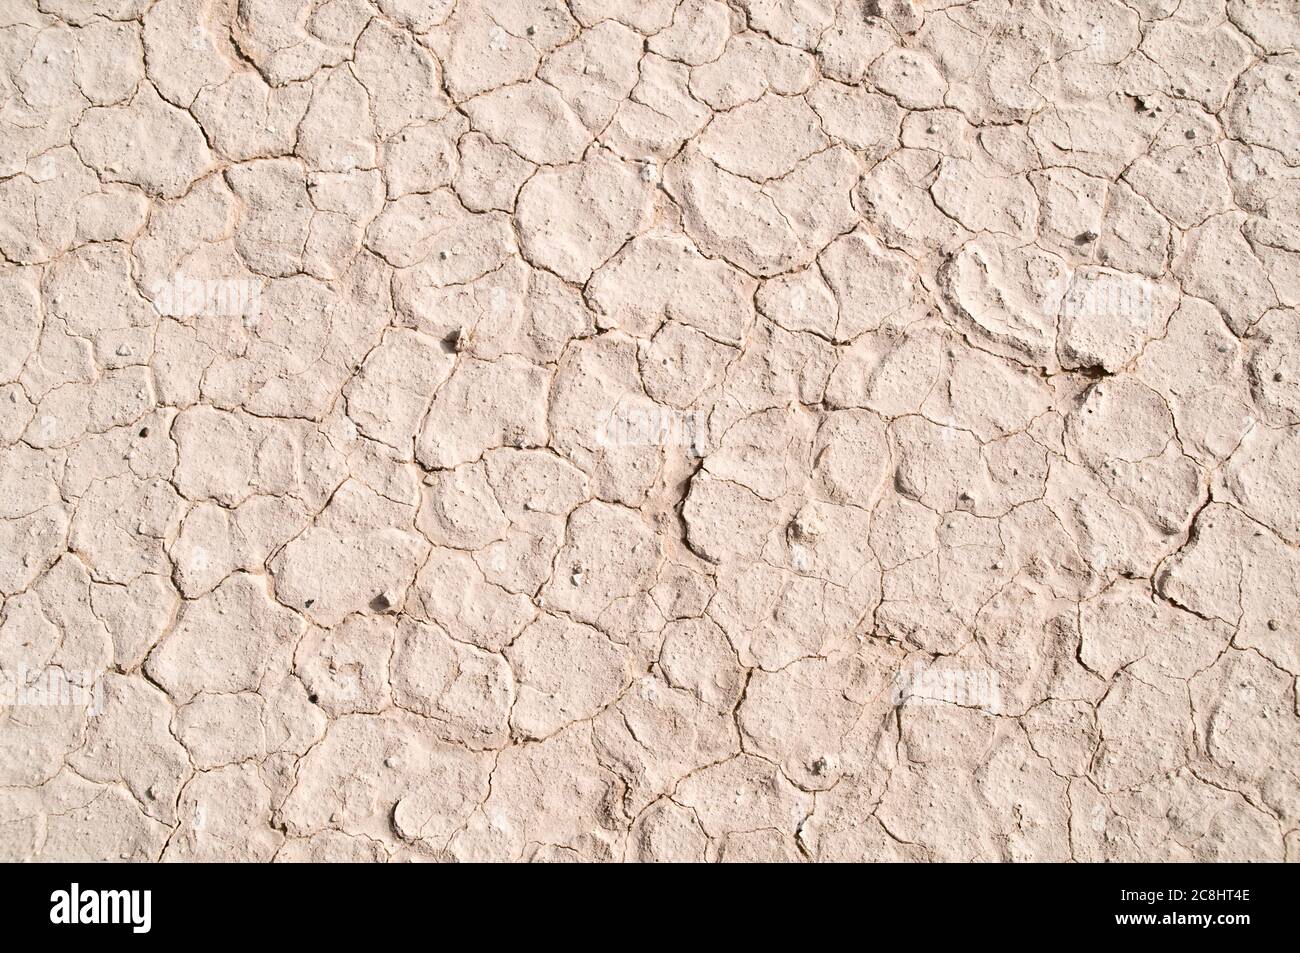 Boue blanche sèche, parchée et fissurée dans le désert oriental de la région de Badia, Wadi Dahek, Royaume hachémite de Jordanie. Banque D'Images